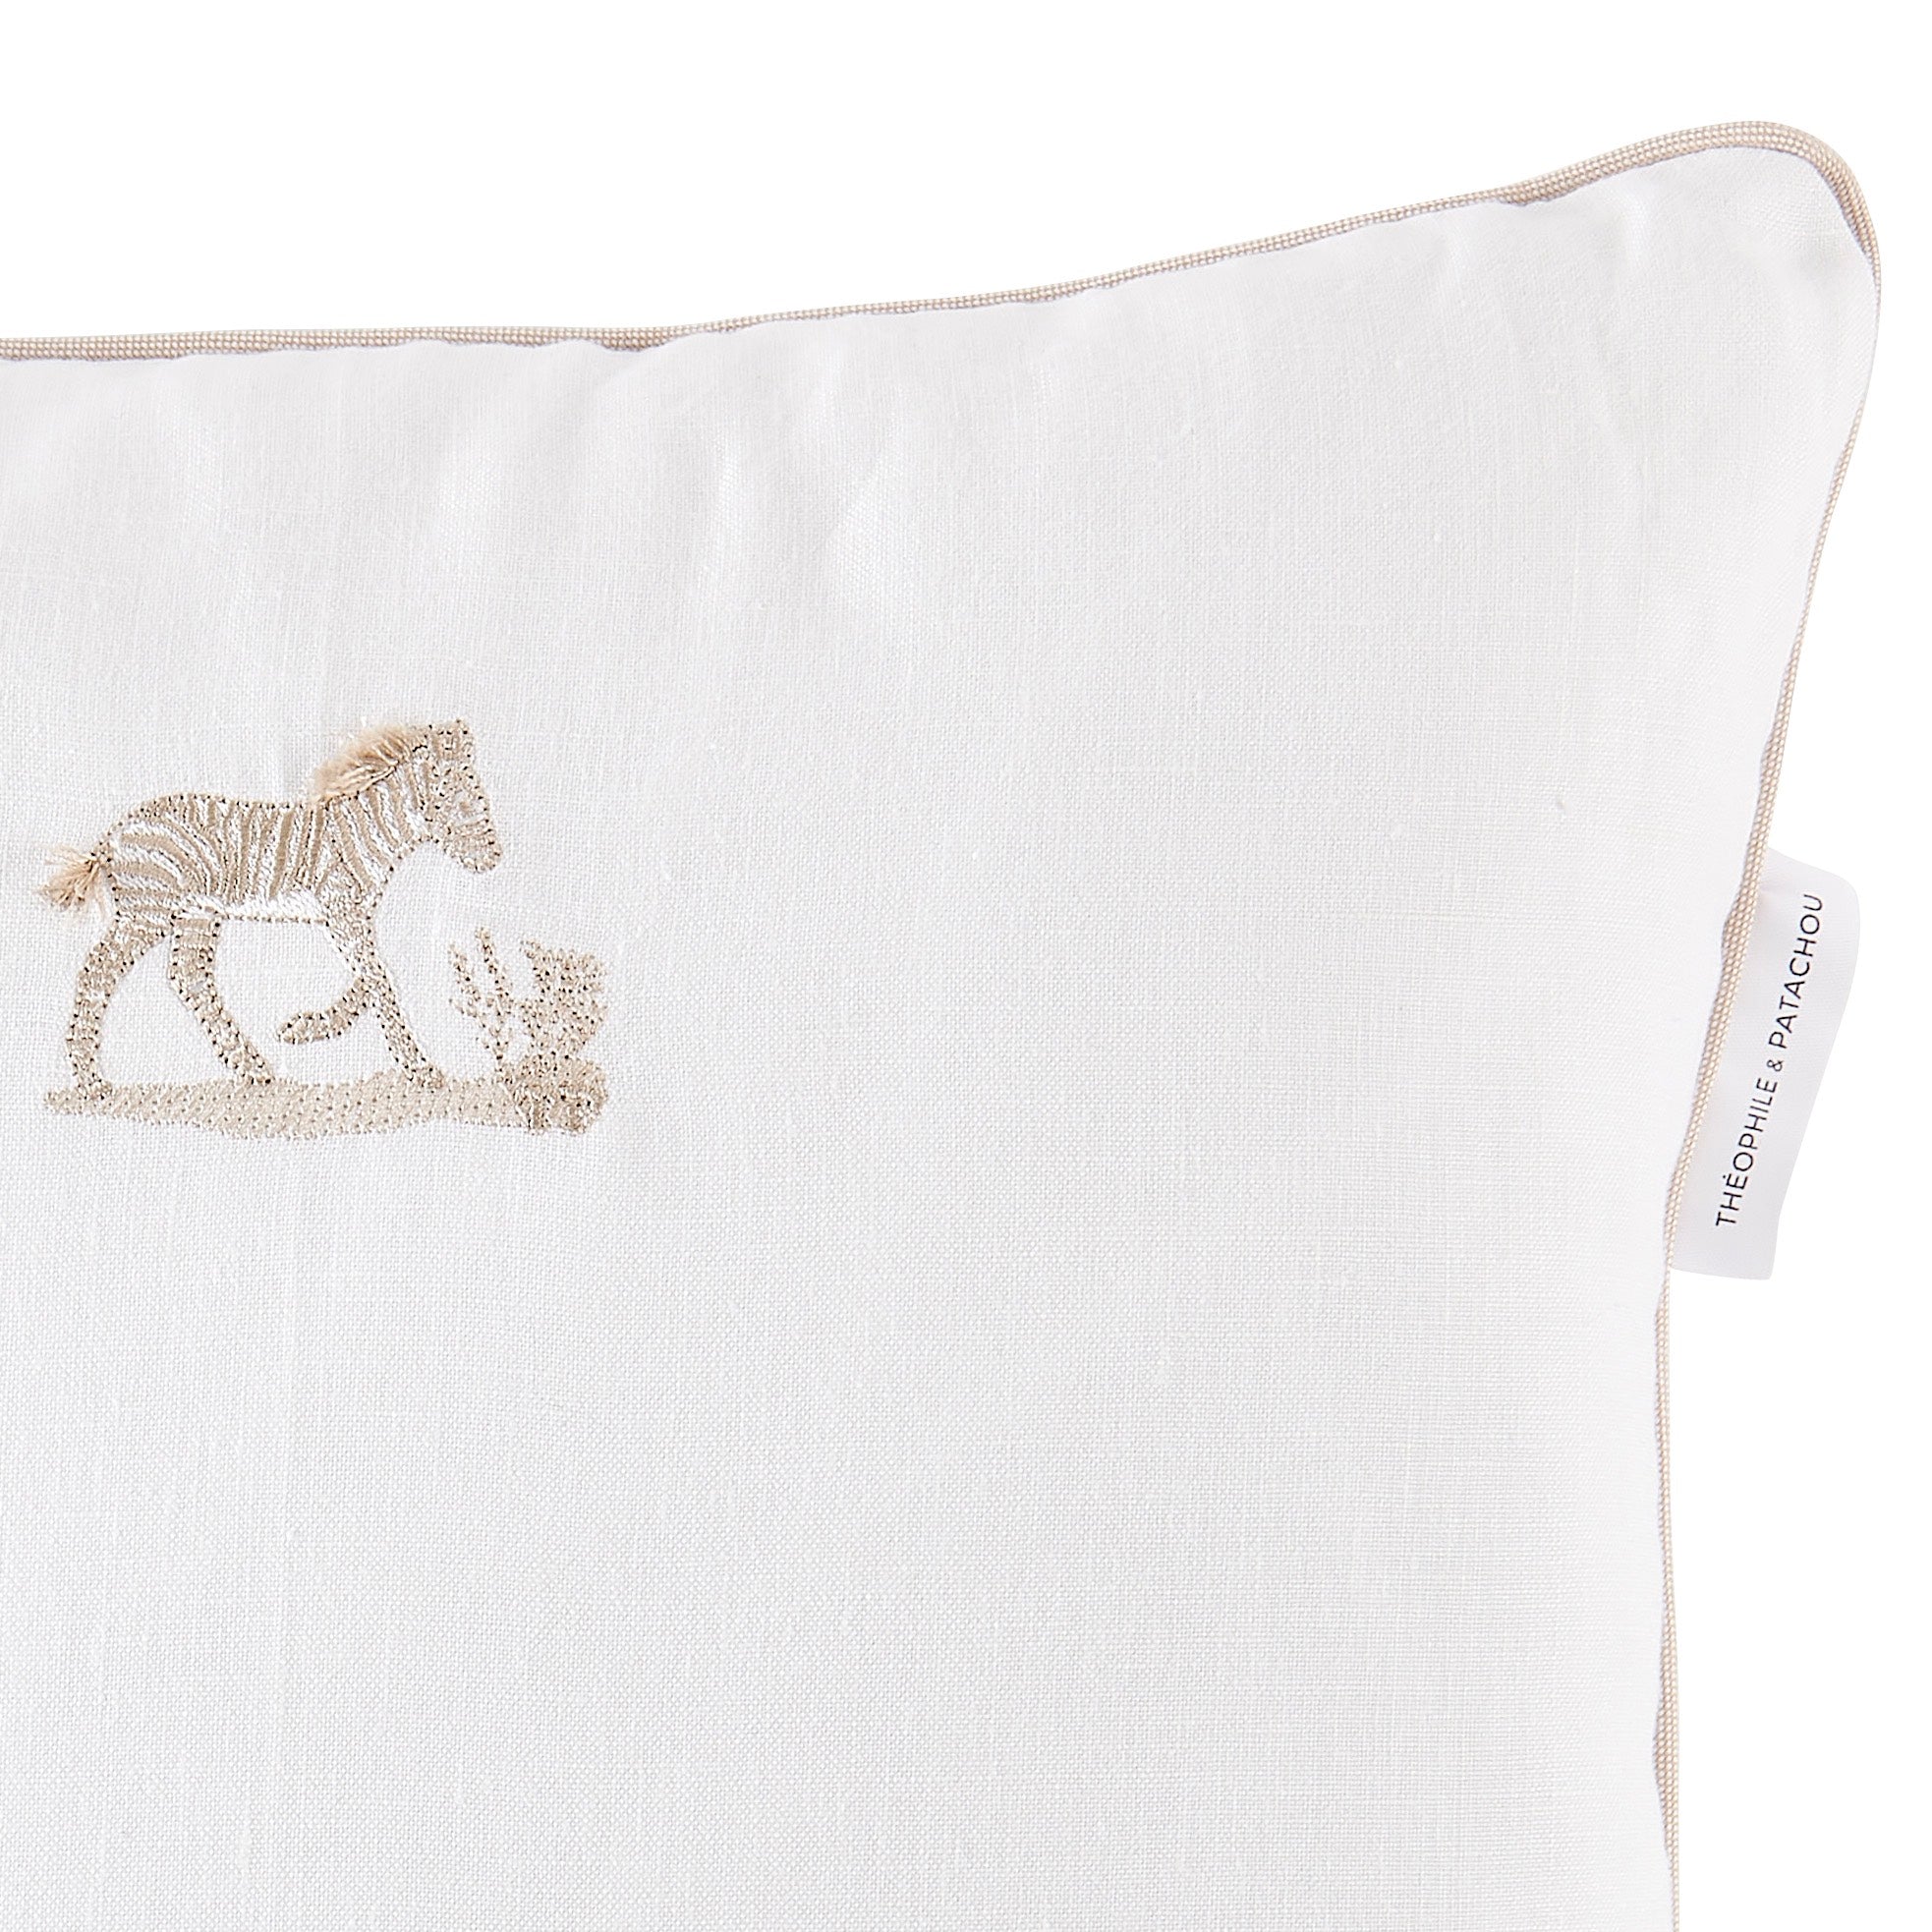 Theophile & Patachou Embroidered Cushion - Safari